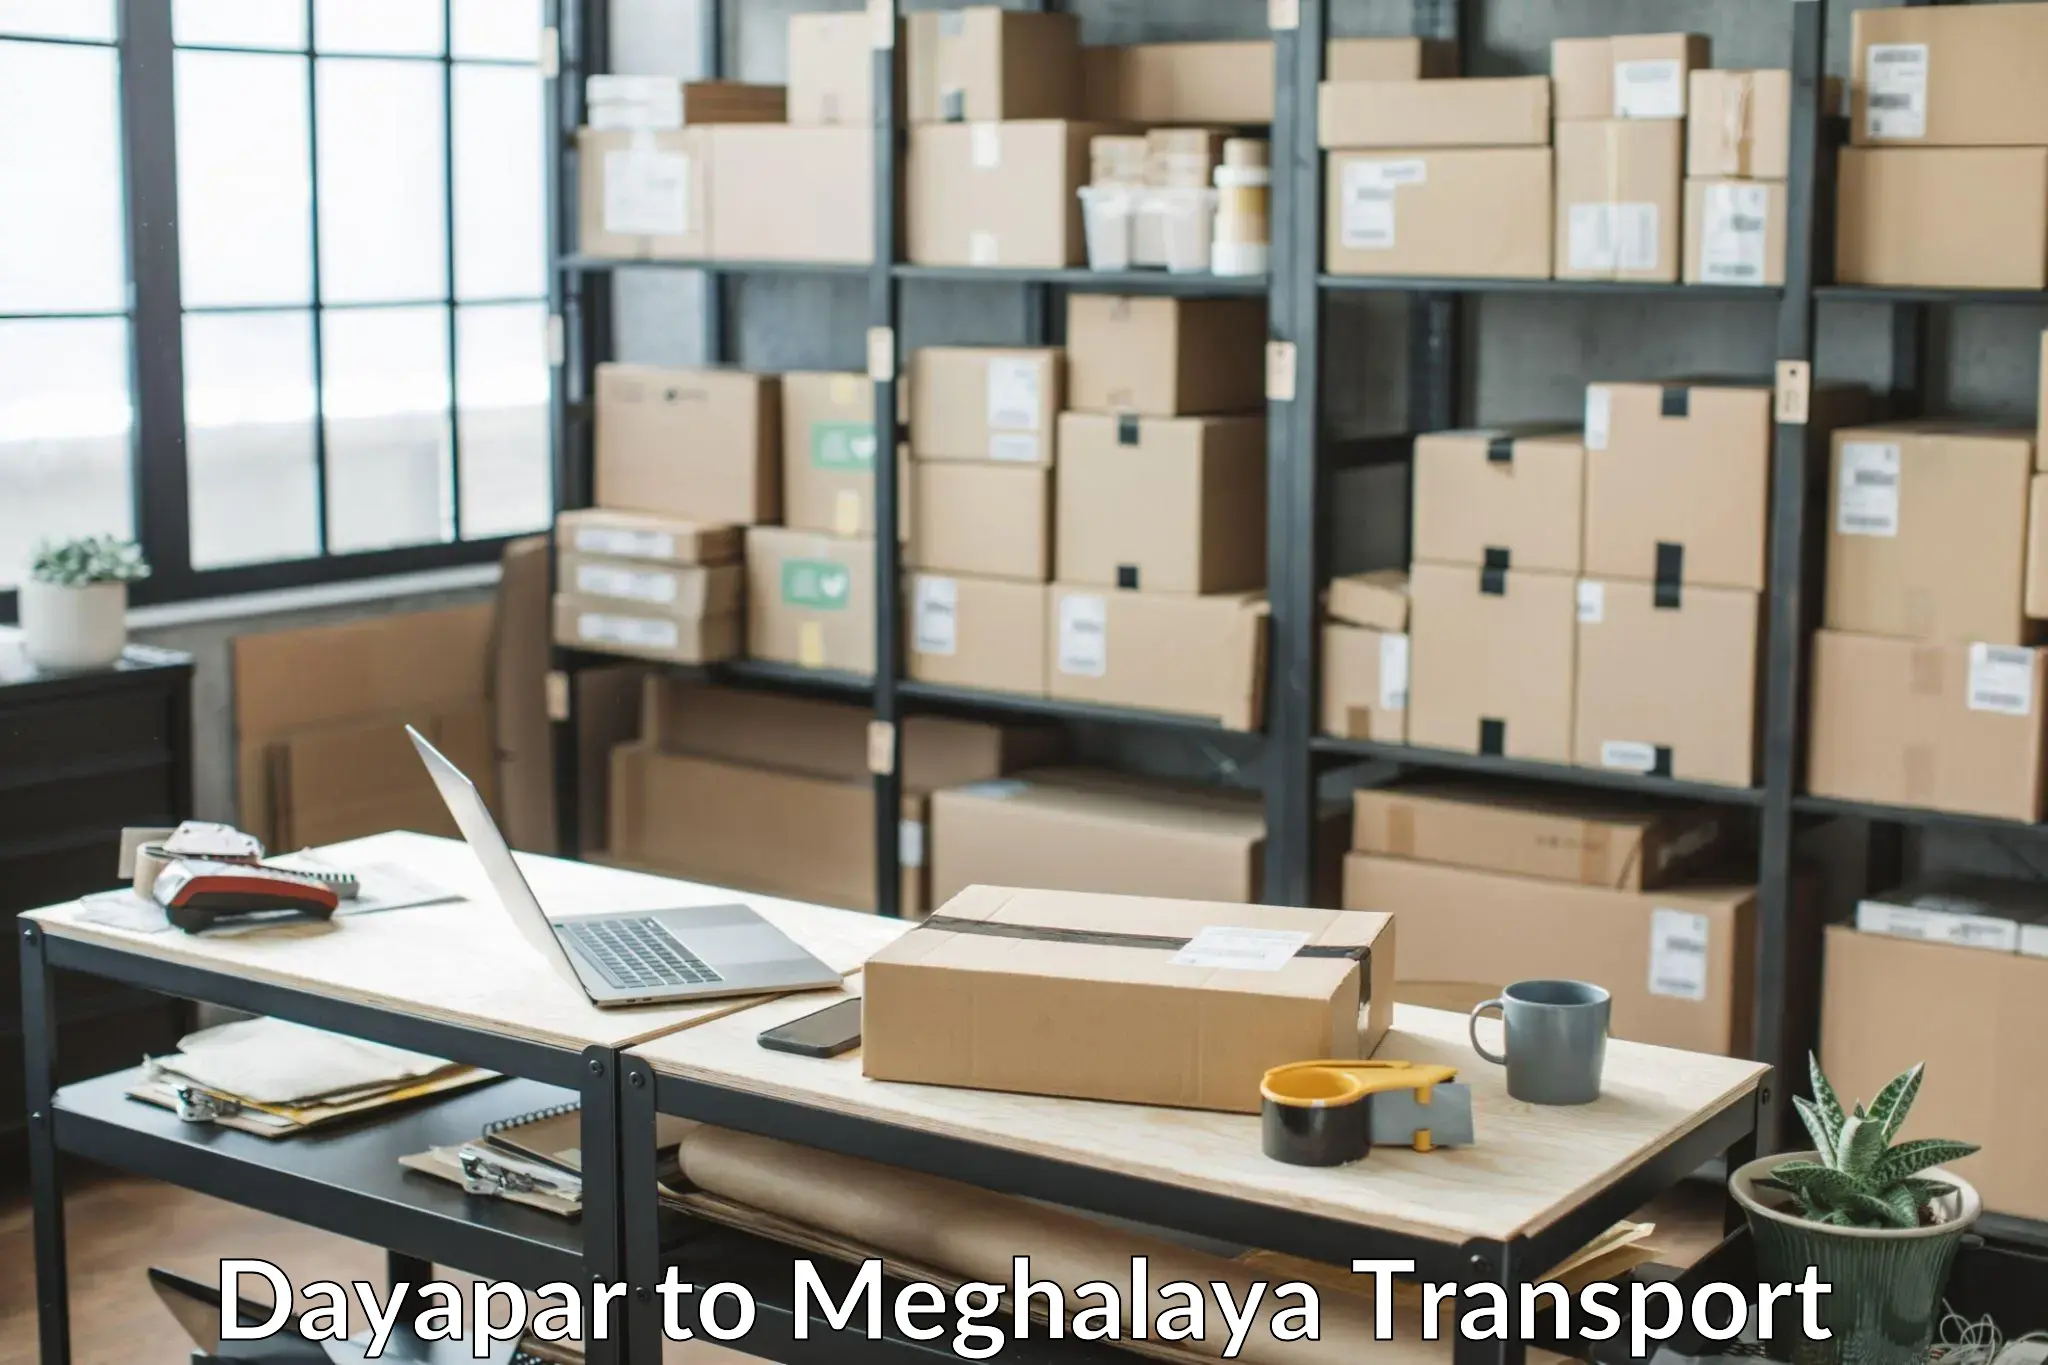 Furniture transport service Dayapar to NIT Meghalaya